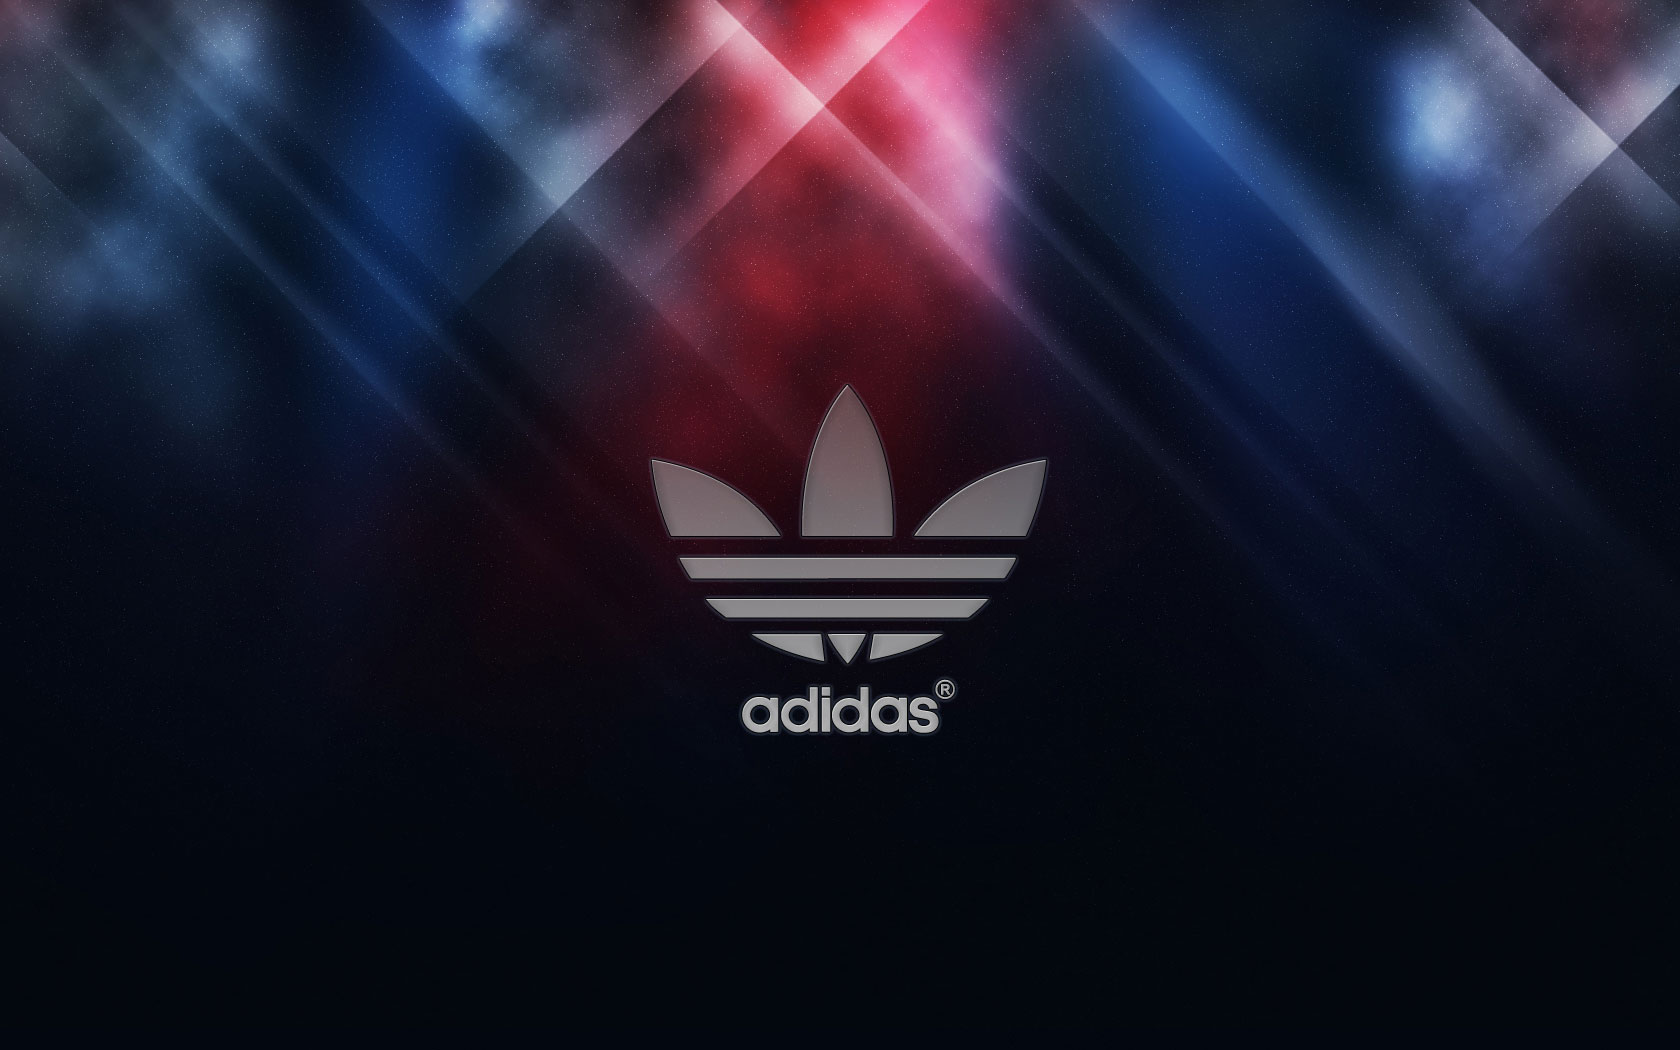 Adidas Logo Wallpaper 2013 is a hi res Wallpaper for pc